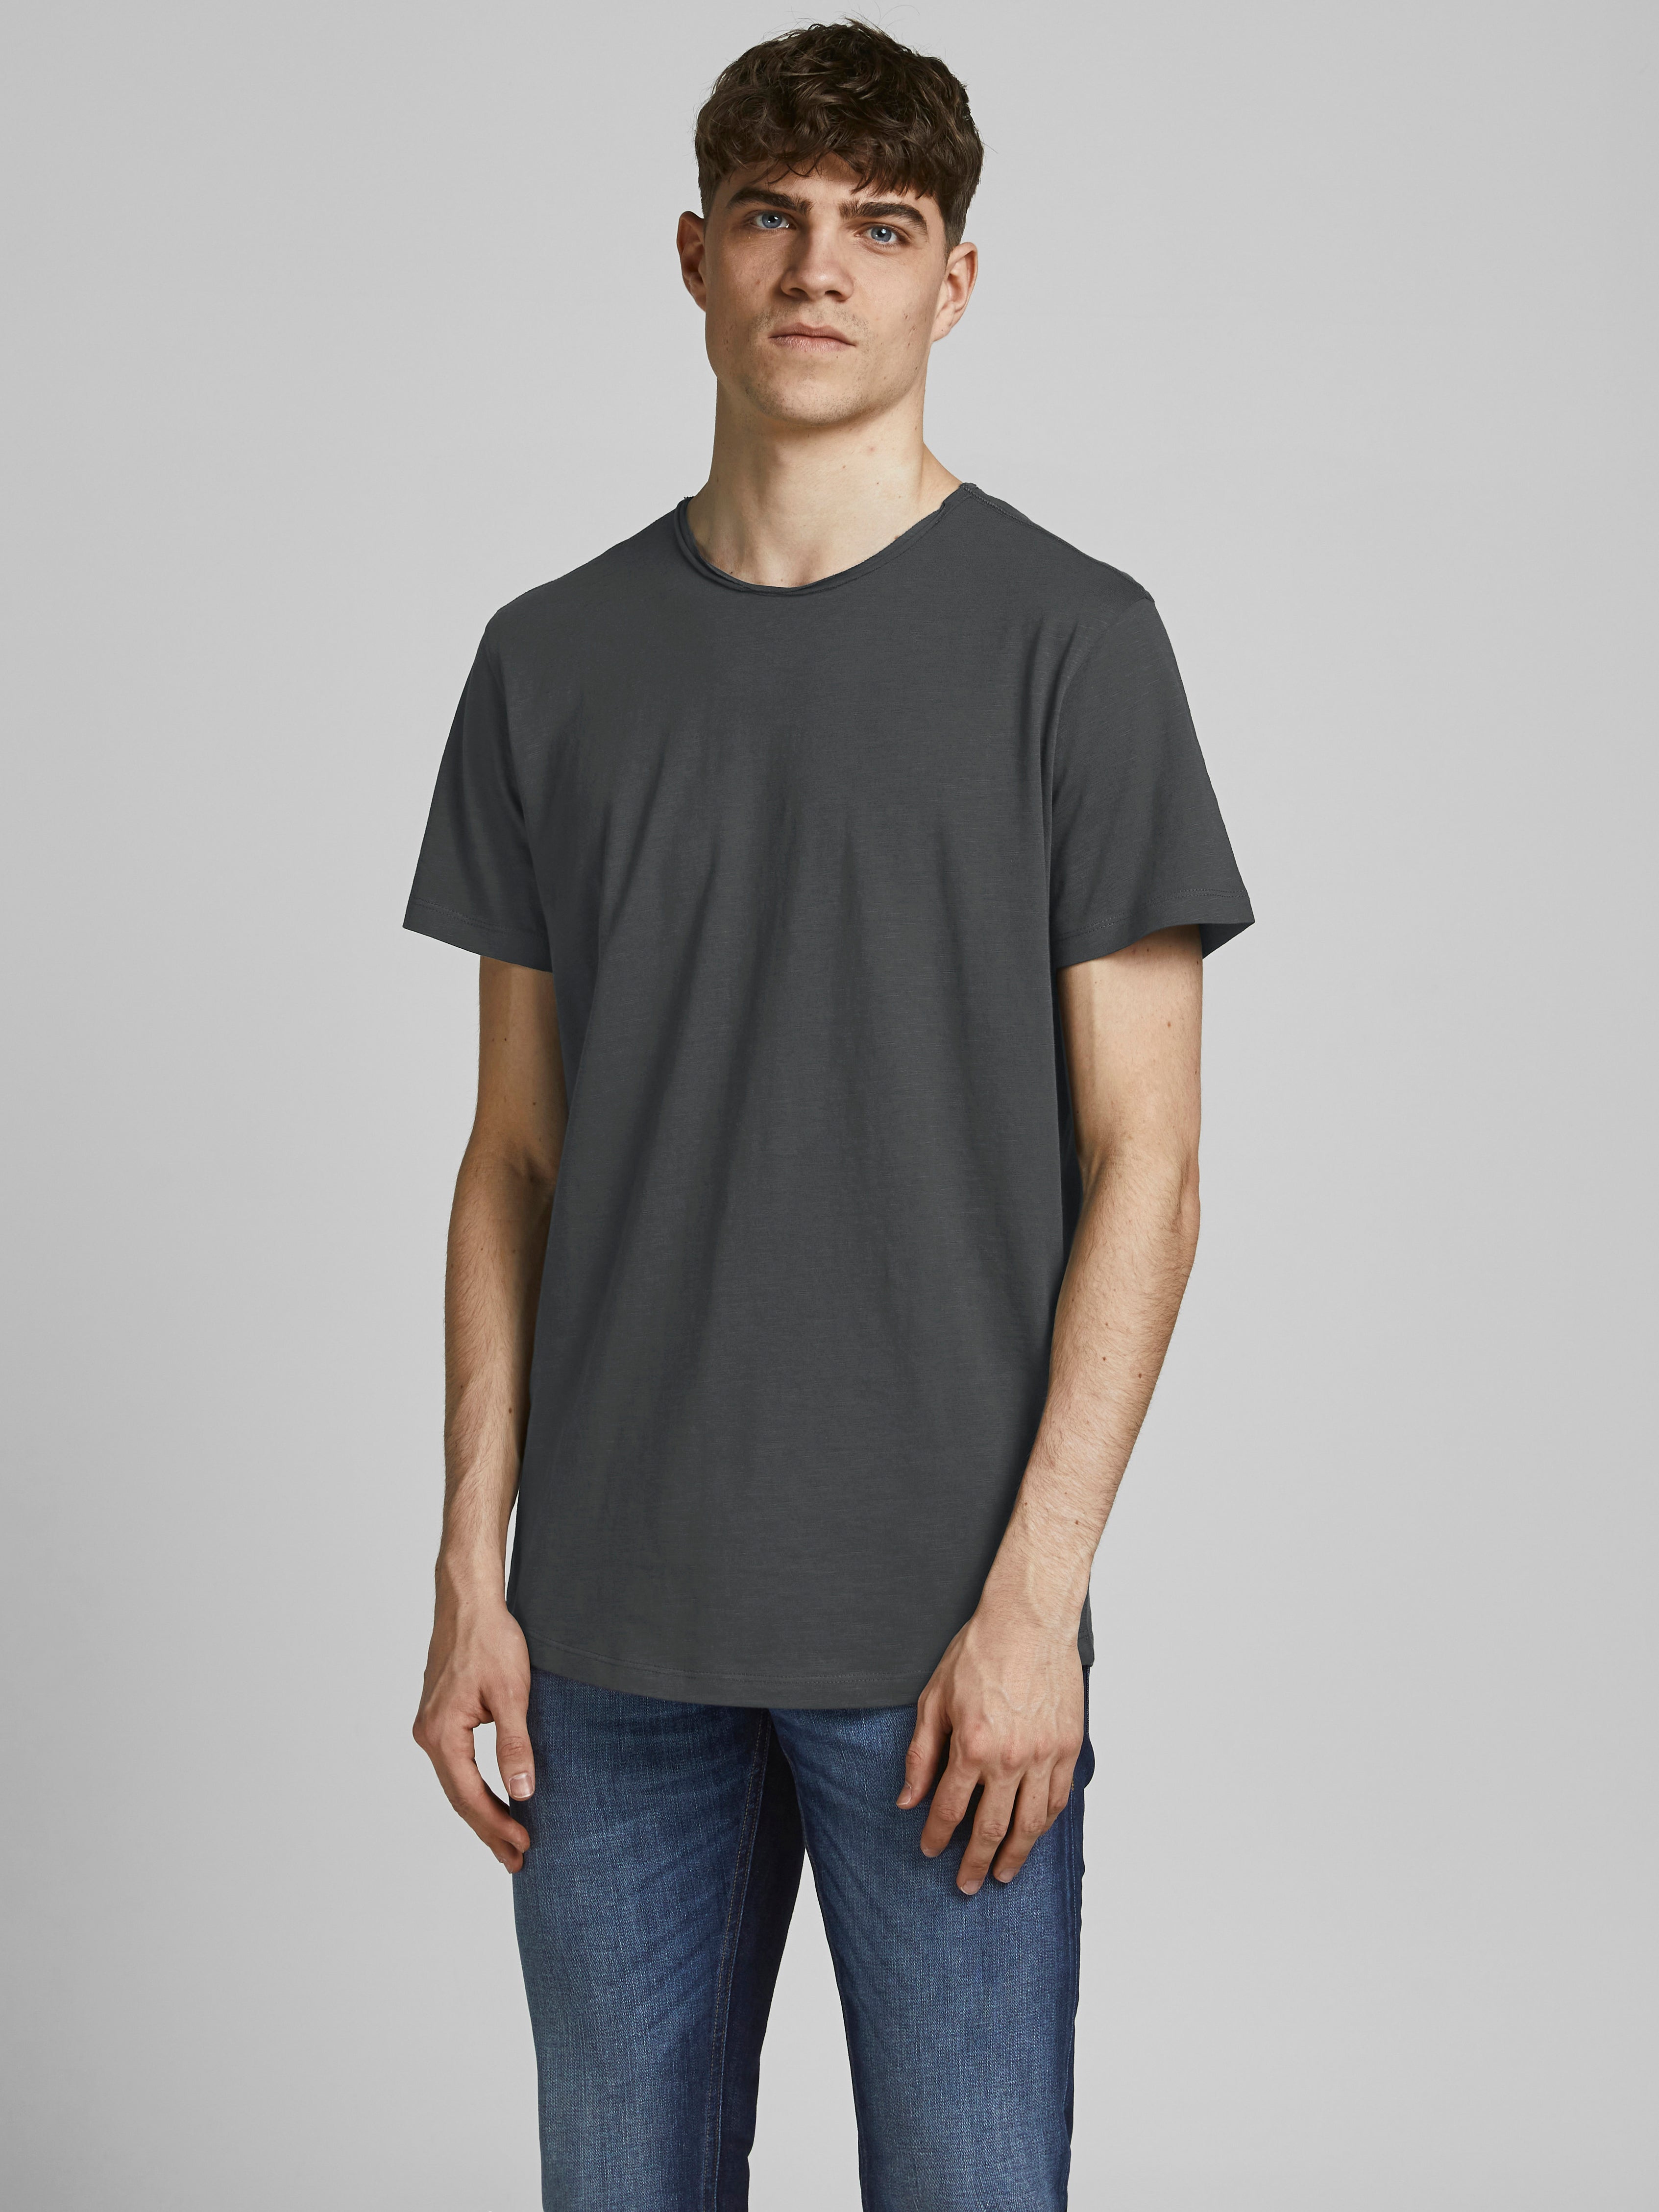 Cortefiel T-Shirt Weiß/Grau L DAMEN Hemden & T-Shirts Bi-Material Rabatt 70 % 